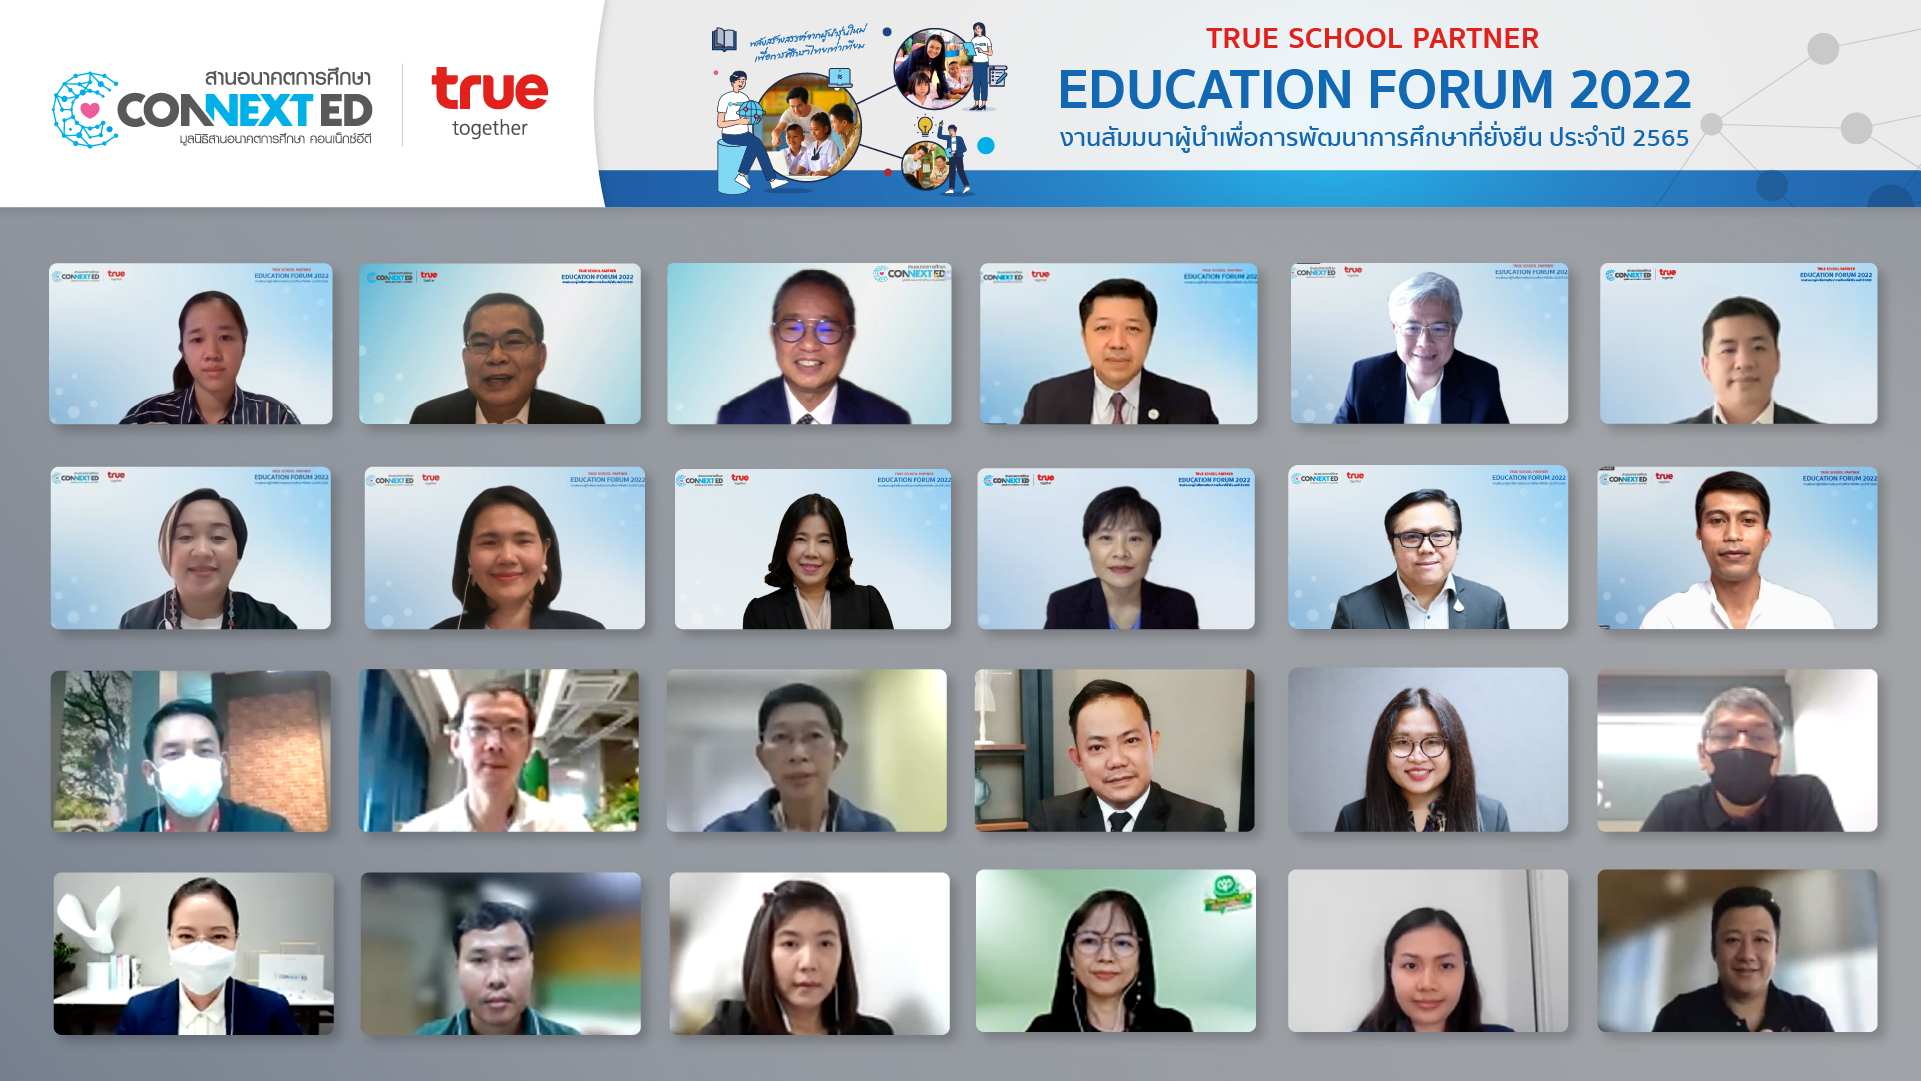 ทรู มุ่งสร้างความเปลี่ยนแปลงให้กับการศึกษาไทย เปิดติวเข้ม “True School Partner Education Forum 2022” สานต่อภารกิจมูลนิธิสานอนาคตการศึกษา คอนเน็กซ์อีดี